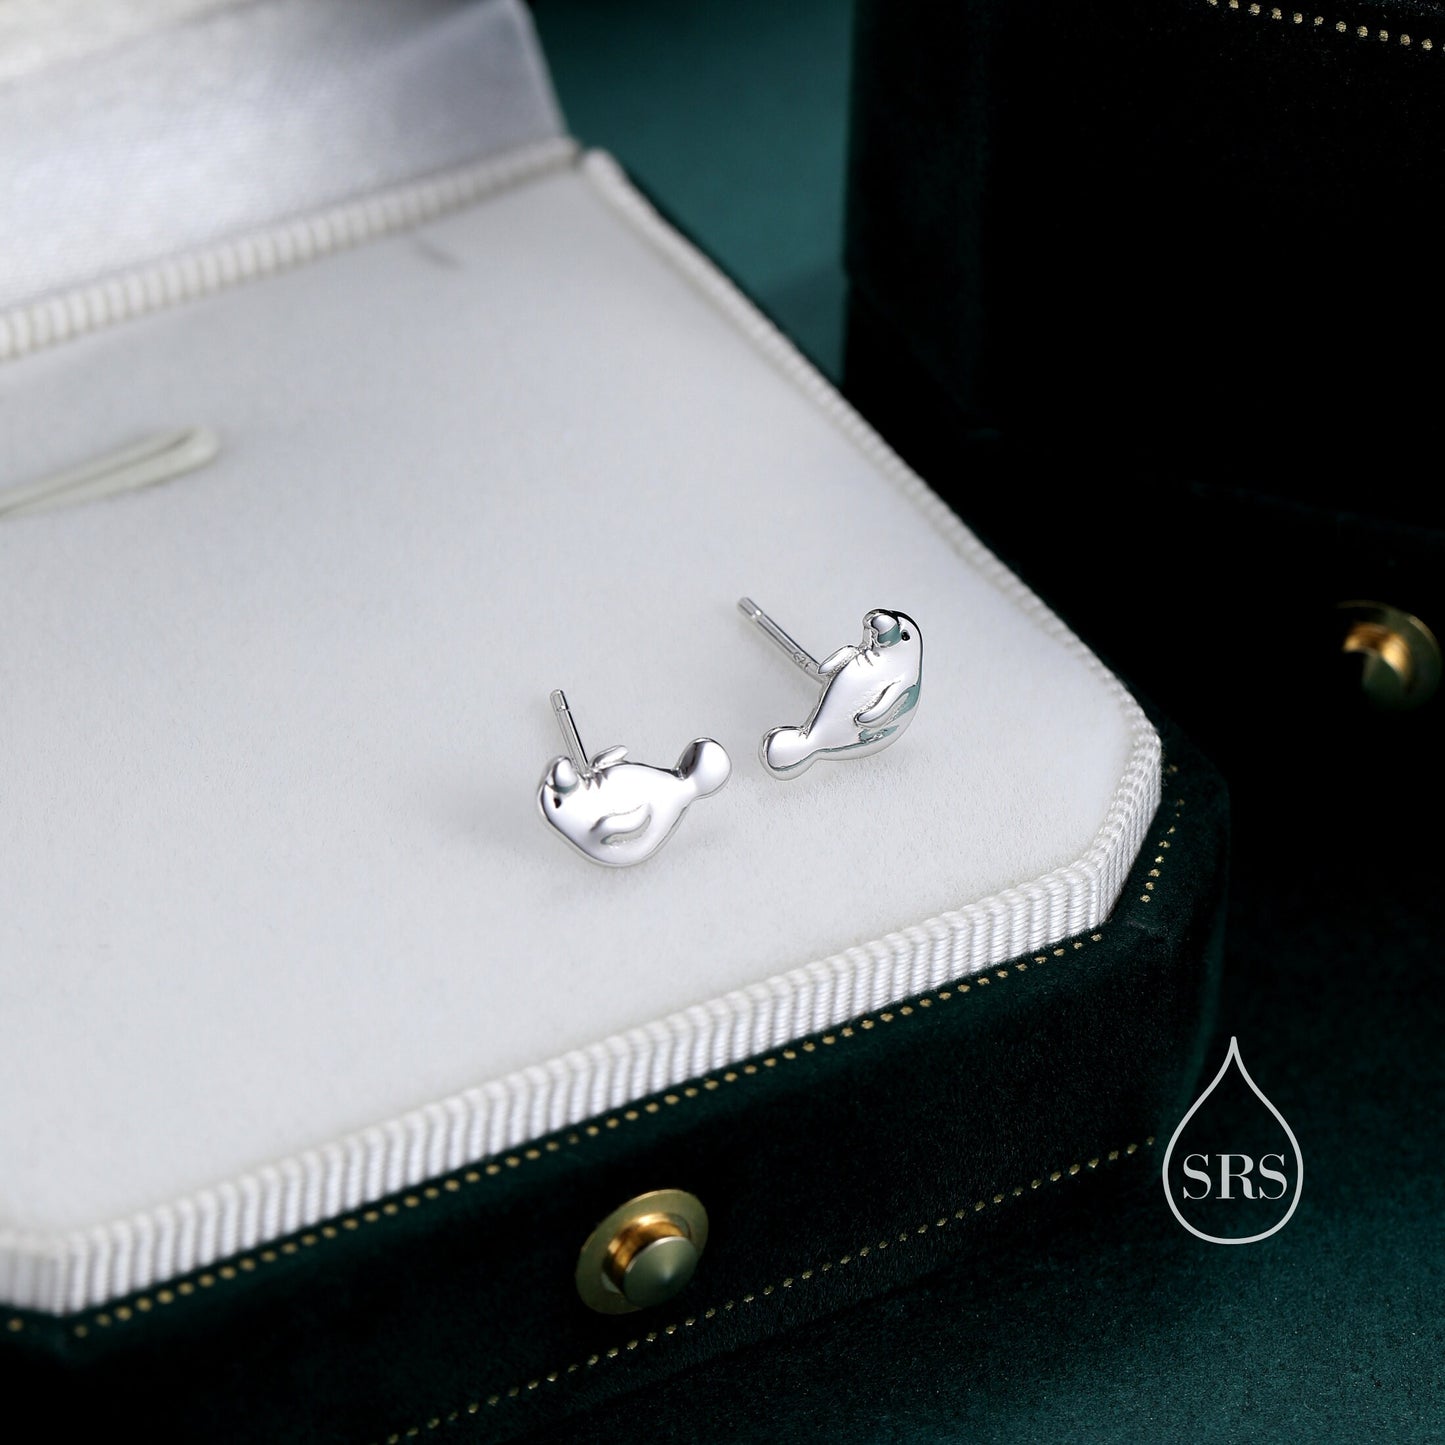 Manatee Stud Earrings in Sterling Silver, Nature Inspired Animal Earrings